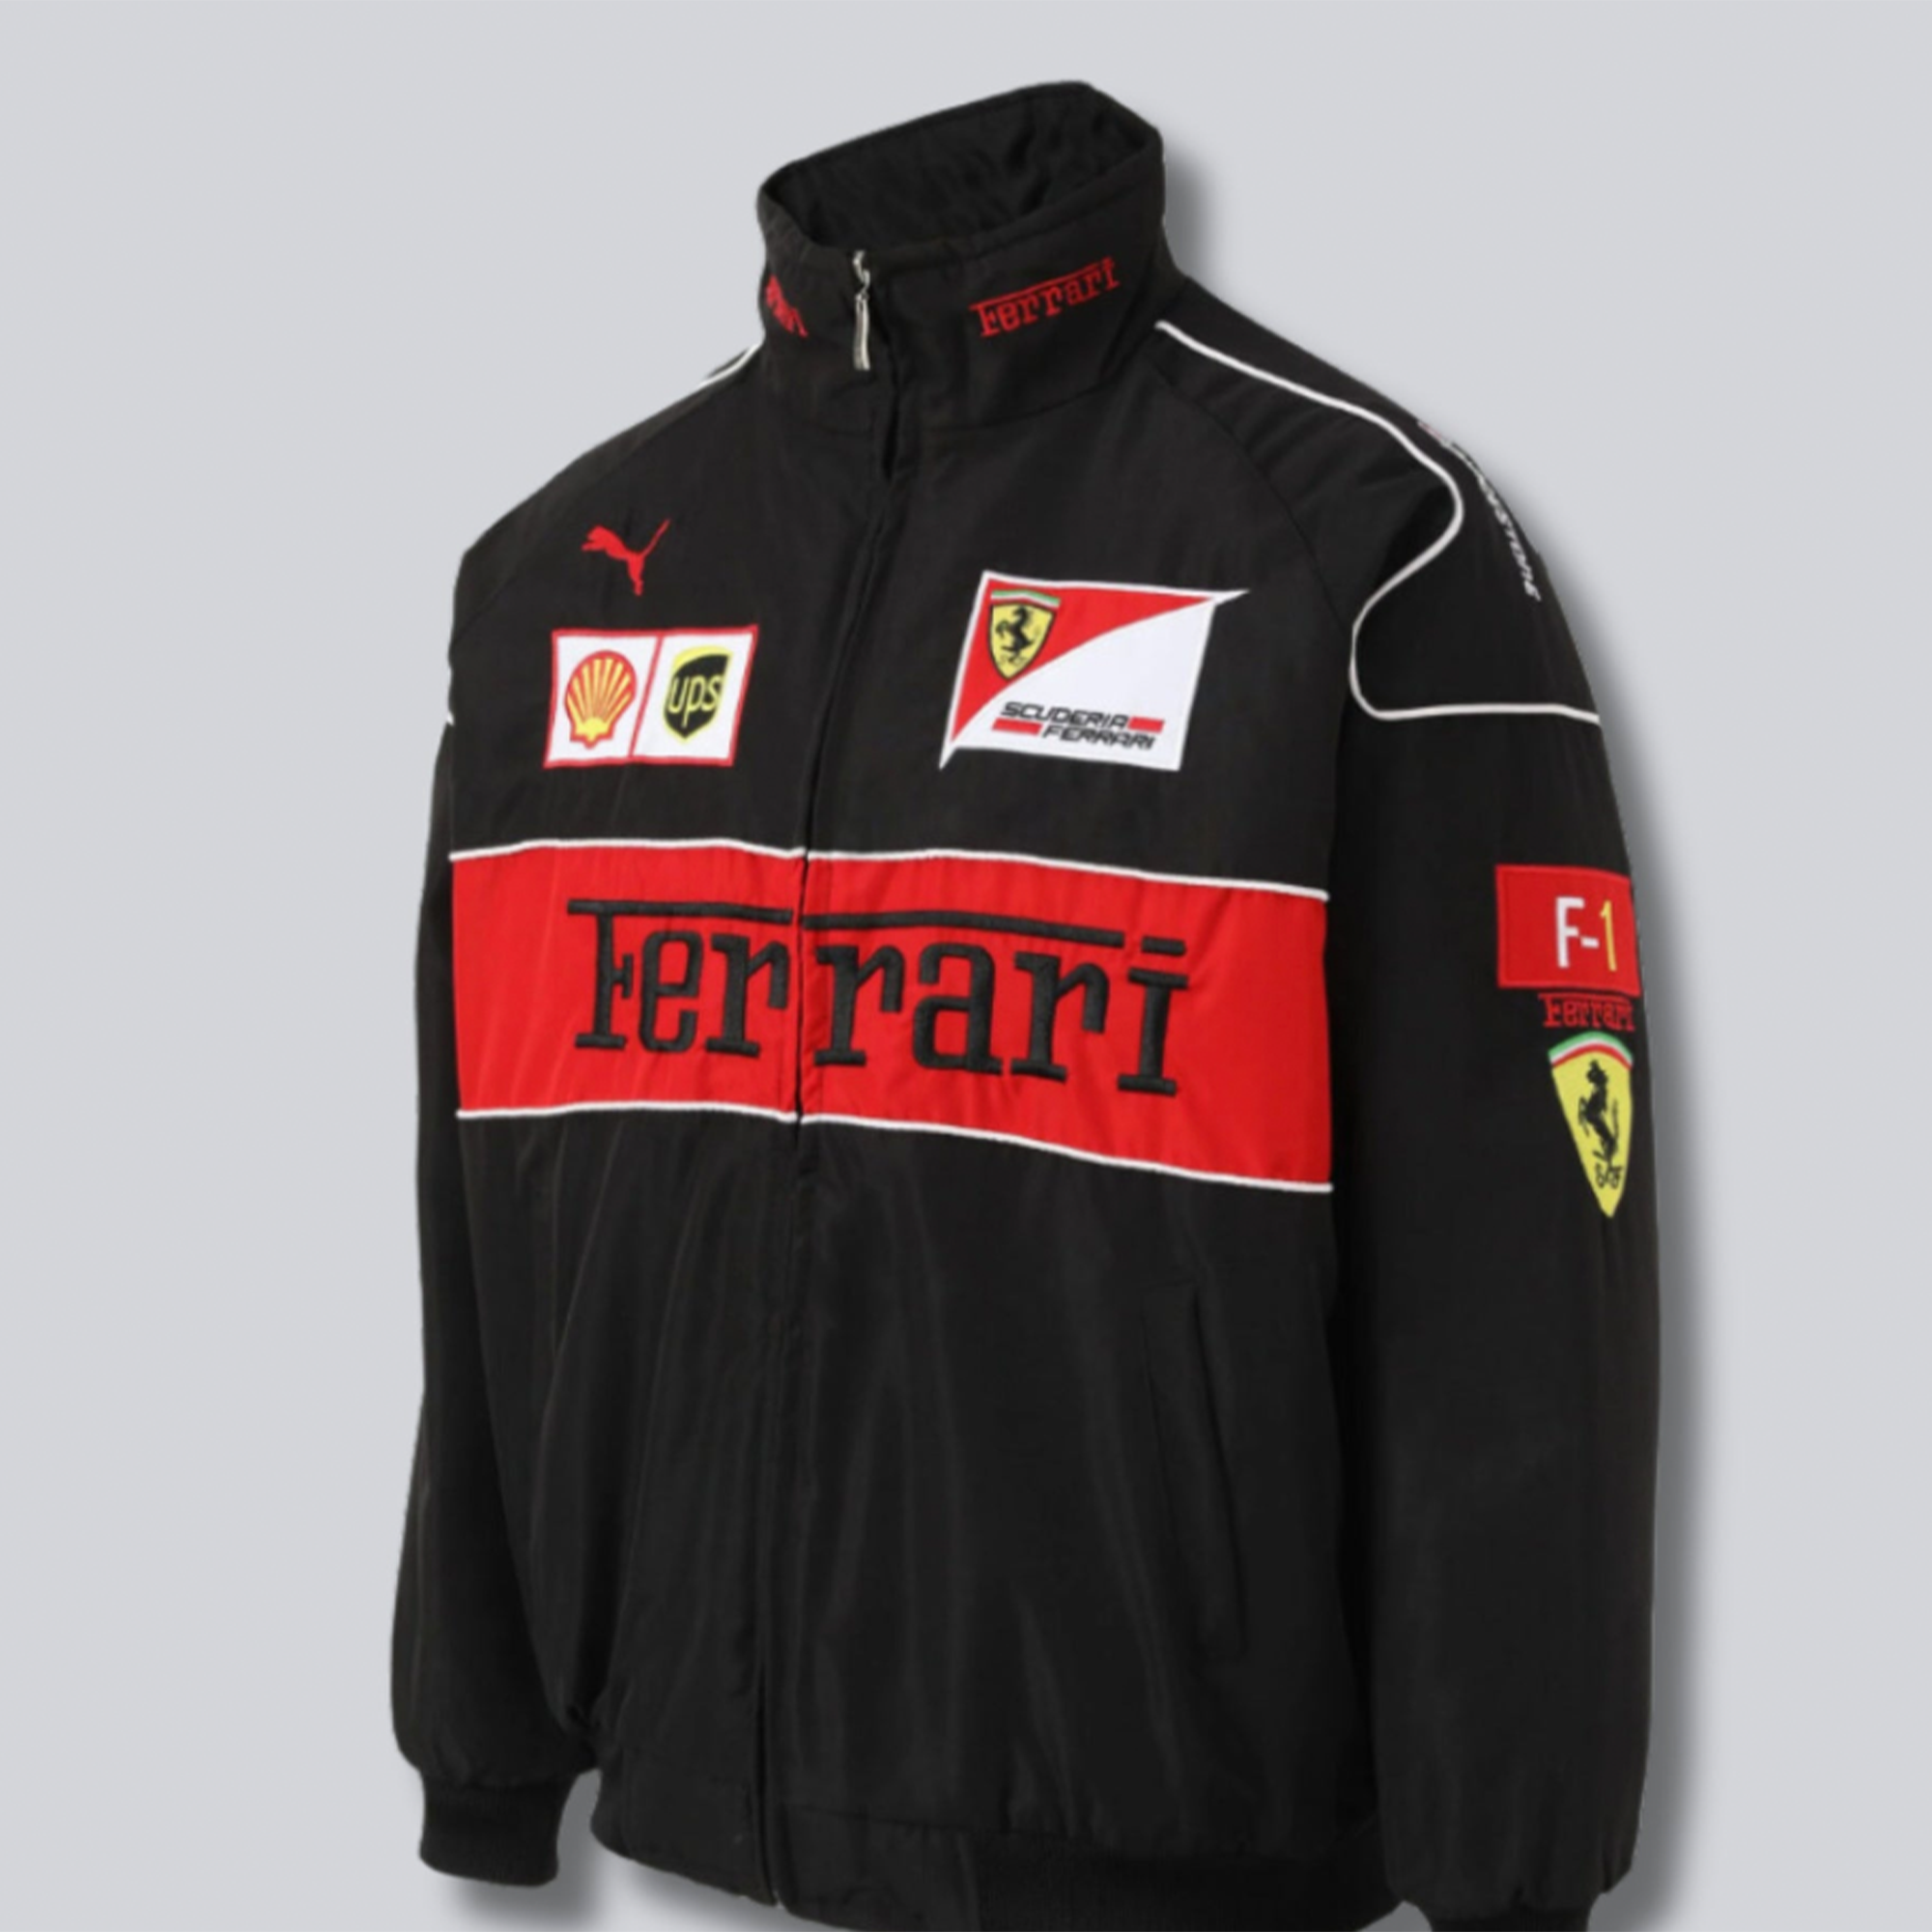 Ferrari F1 Vintage black Jacket